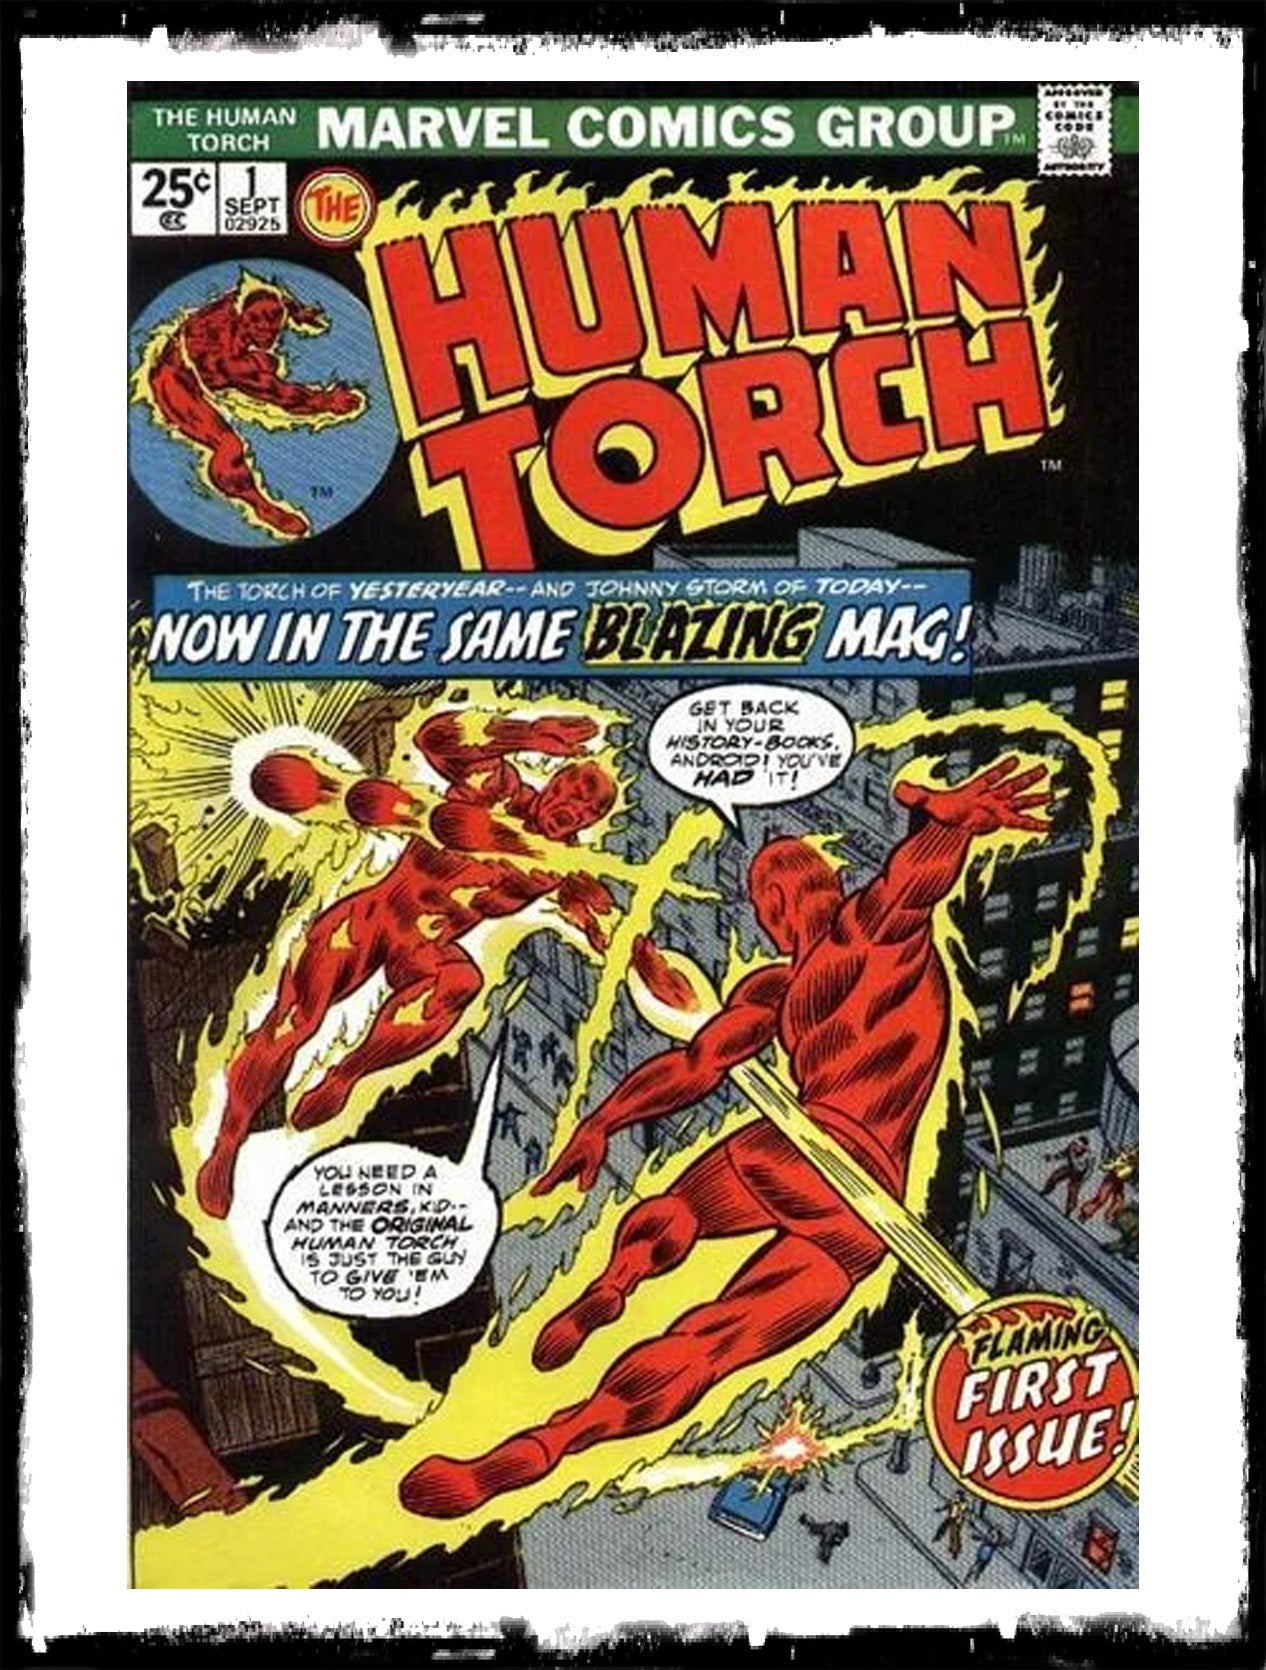 THE HUMAN TORCH - #1 JOHNNY STORM VS THE ORGINAL HUMAN TORCH! (1974 - VF+)